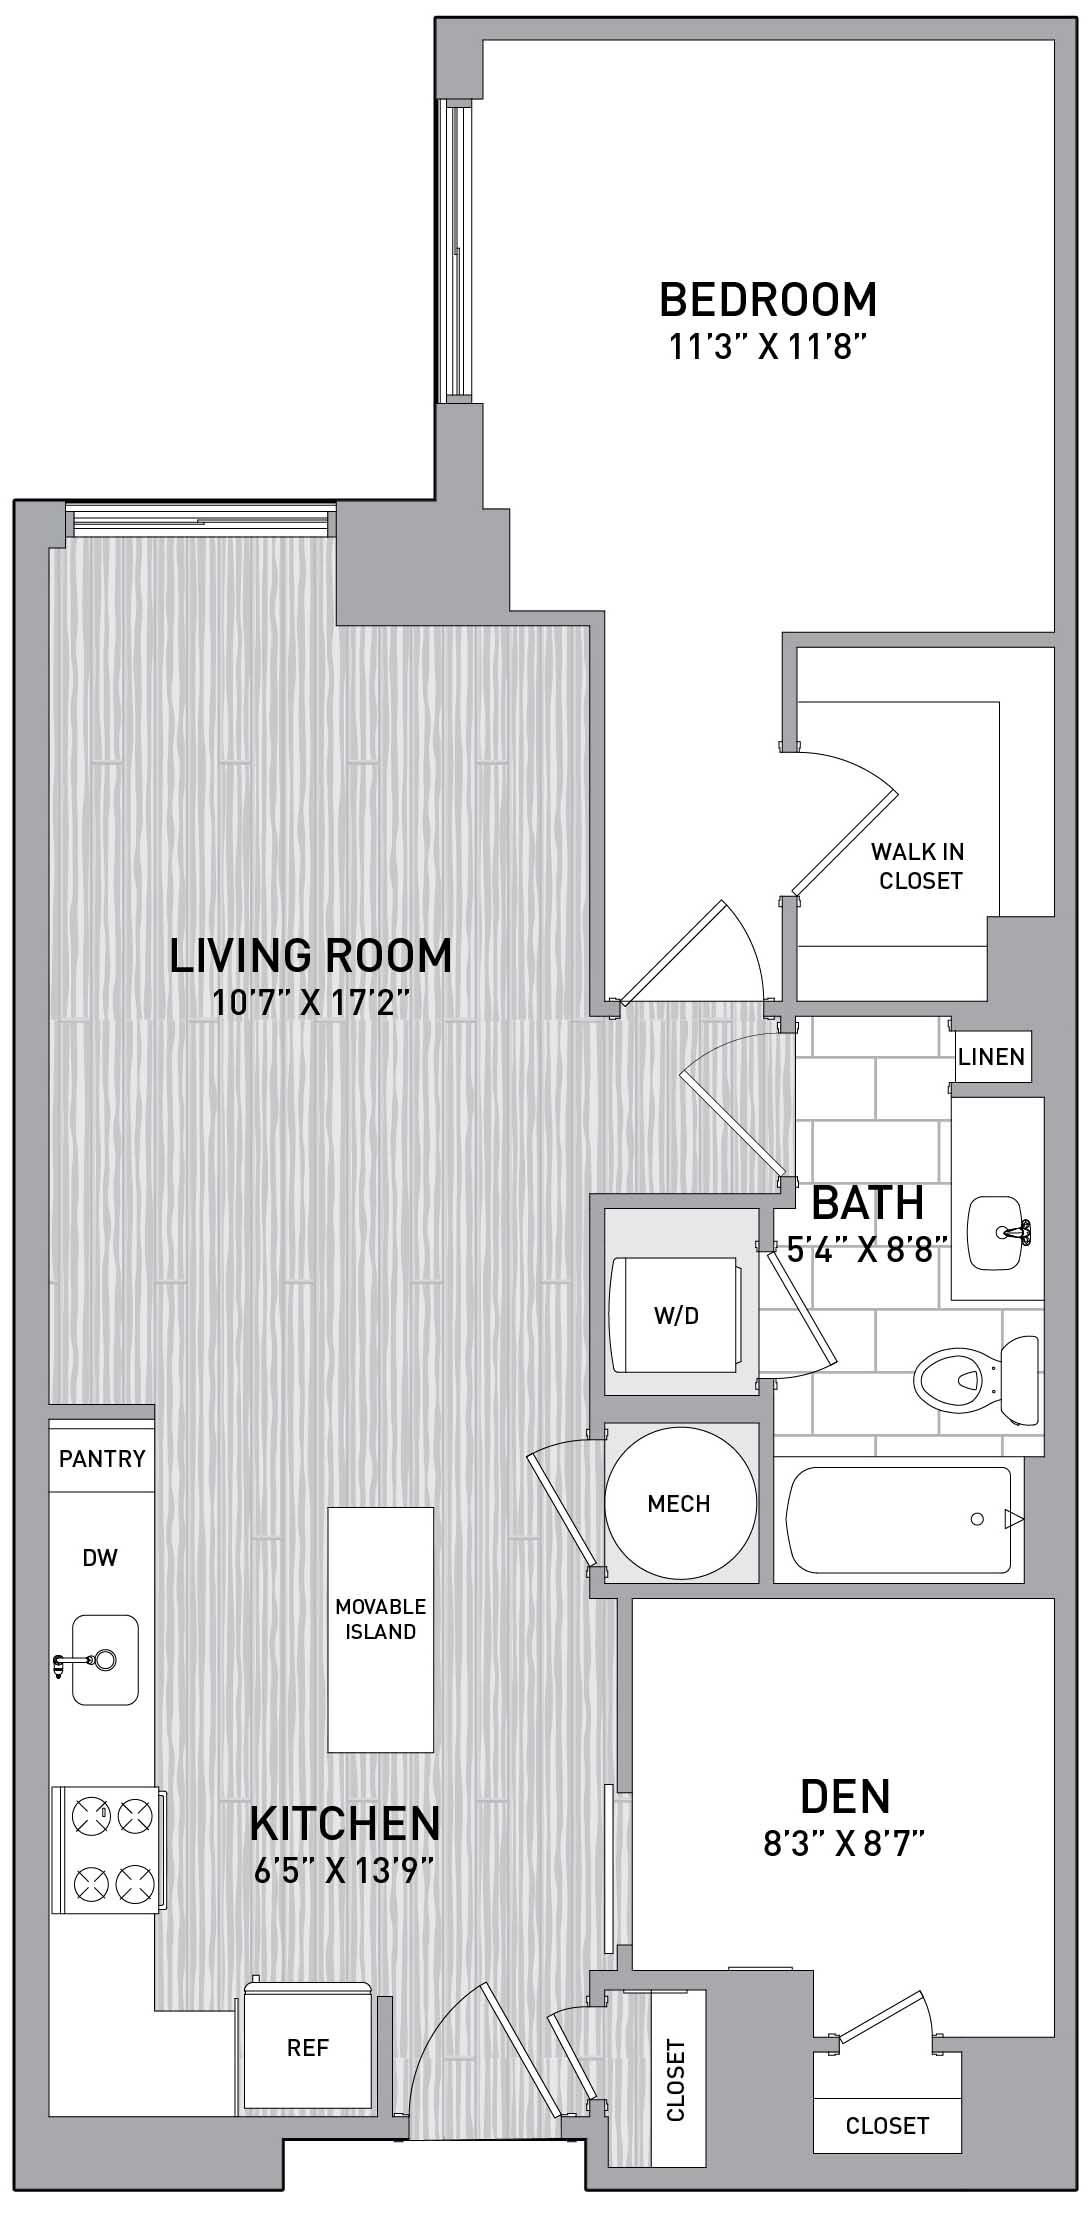 Floorplan Image of unit 151-1015